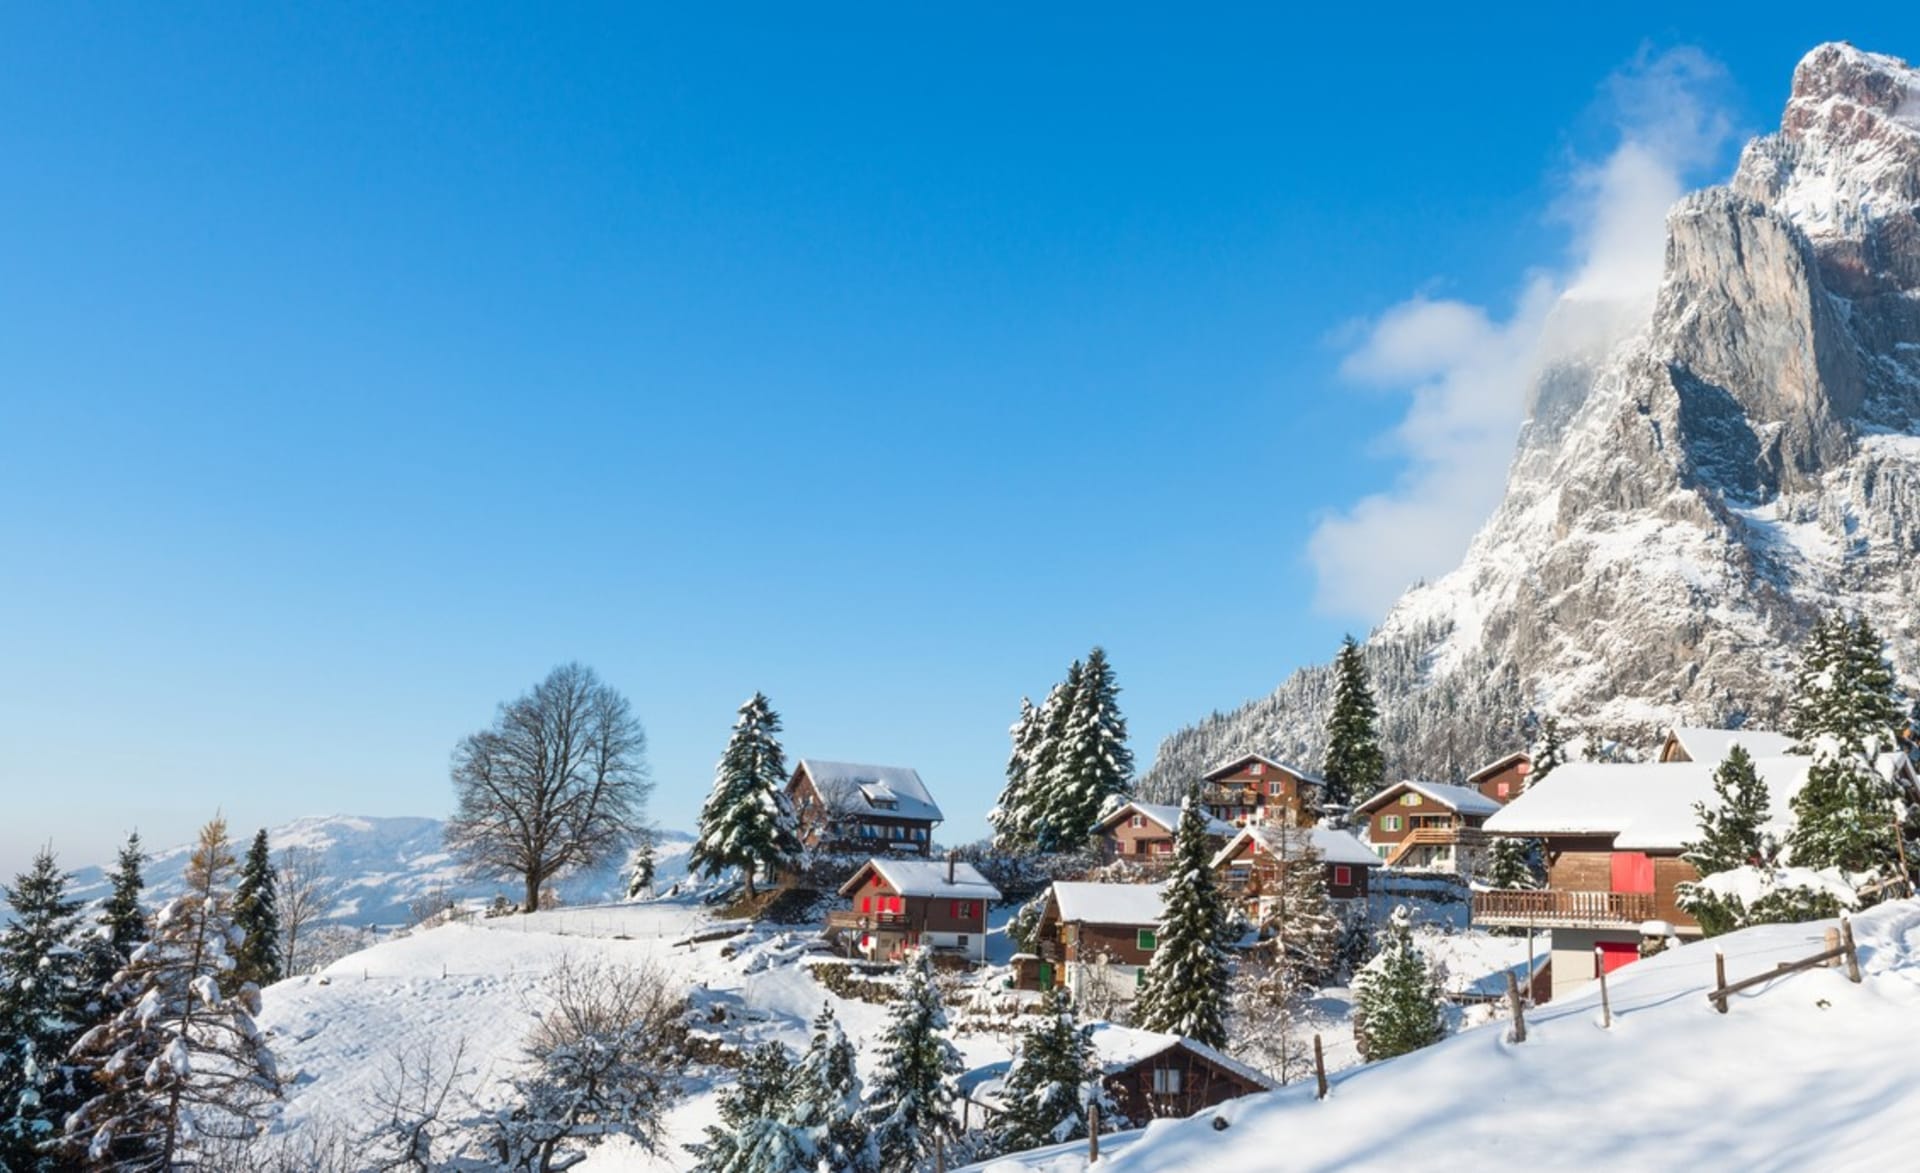 Kanton Valais ve Švýcarsku: V malebné vesničce Albinen vám za bydlení zaplatí. Švýcarská vláda nechce, aby se obec stala místem duchů, nabízí za trvalé přistěhování příspěvek ve výši 25 000 švýcarských franků (přibližně 700 000 Kč) pro dospělé do 45 let.